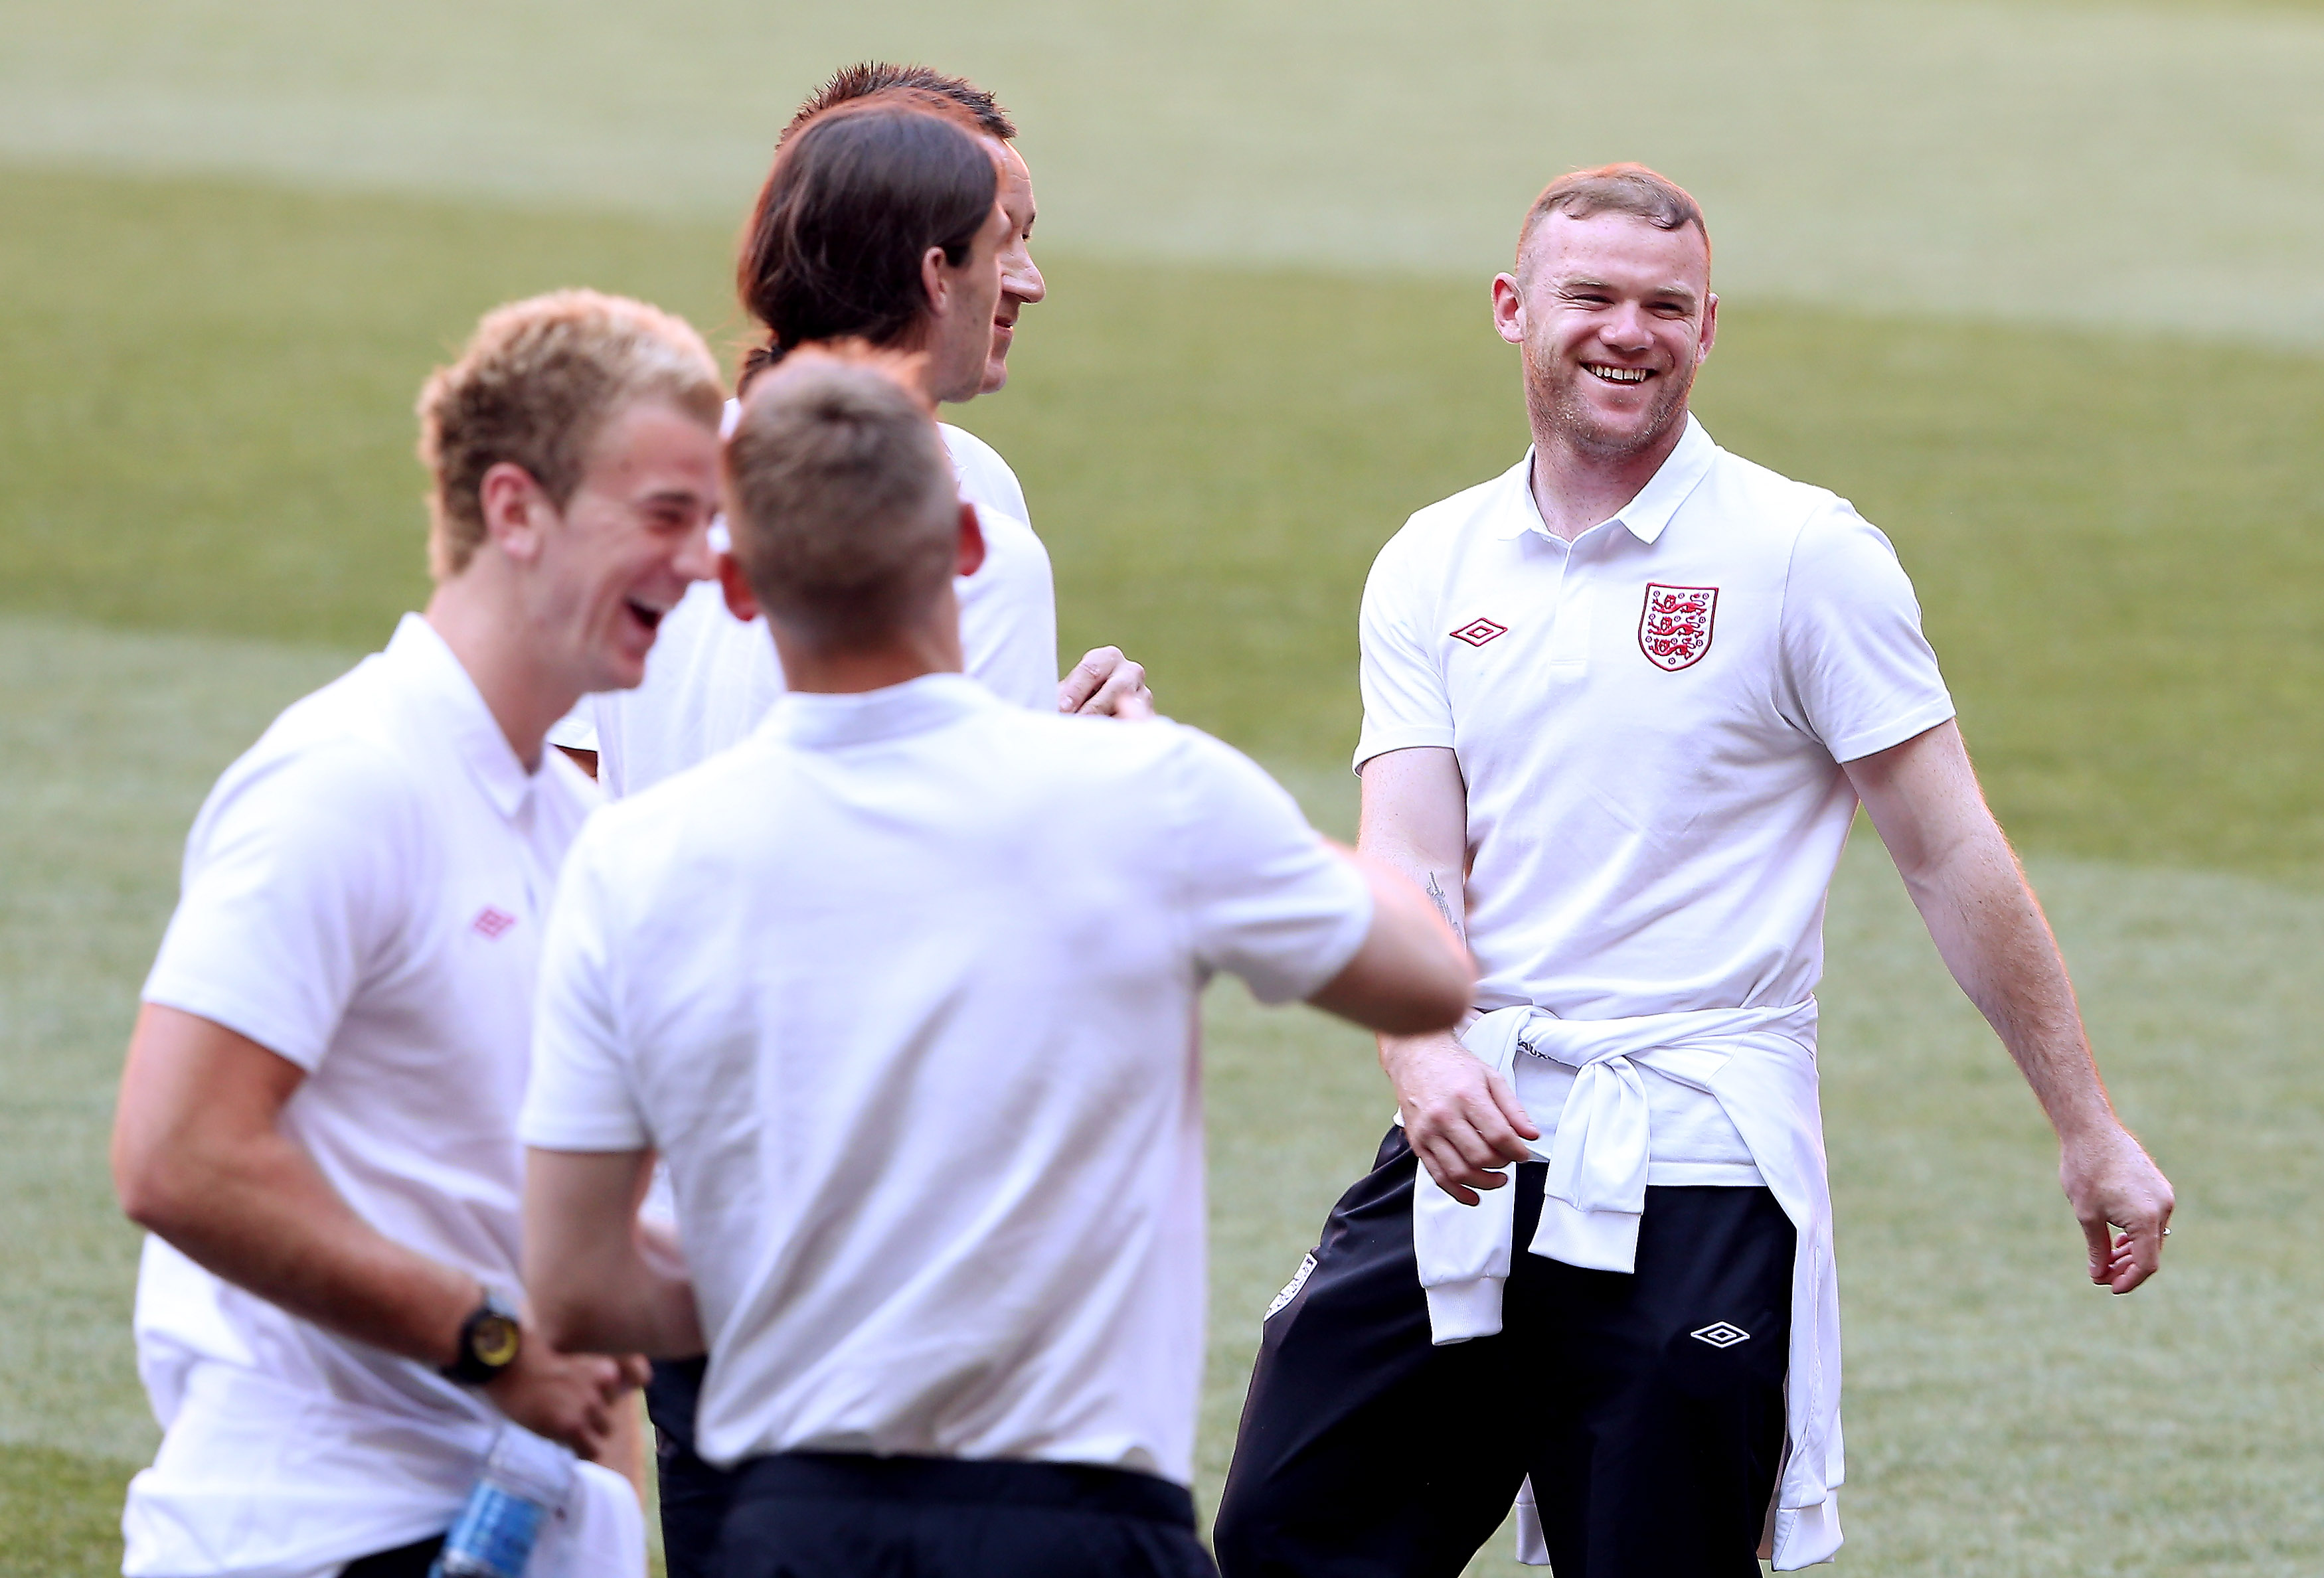 Wayne Rooney startar mot Ukraina i morgon bekräftade den engelske förbundskaptenen Roy Hodgson i dag.